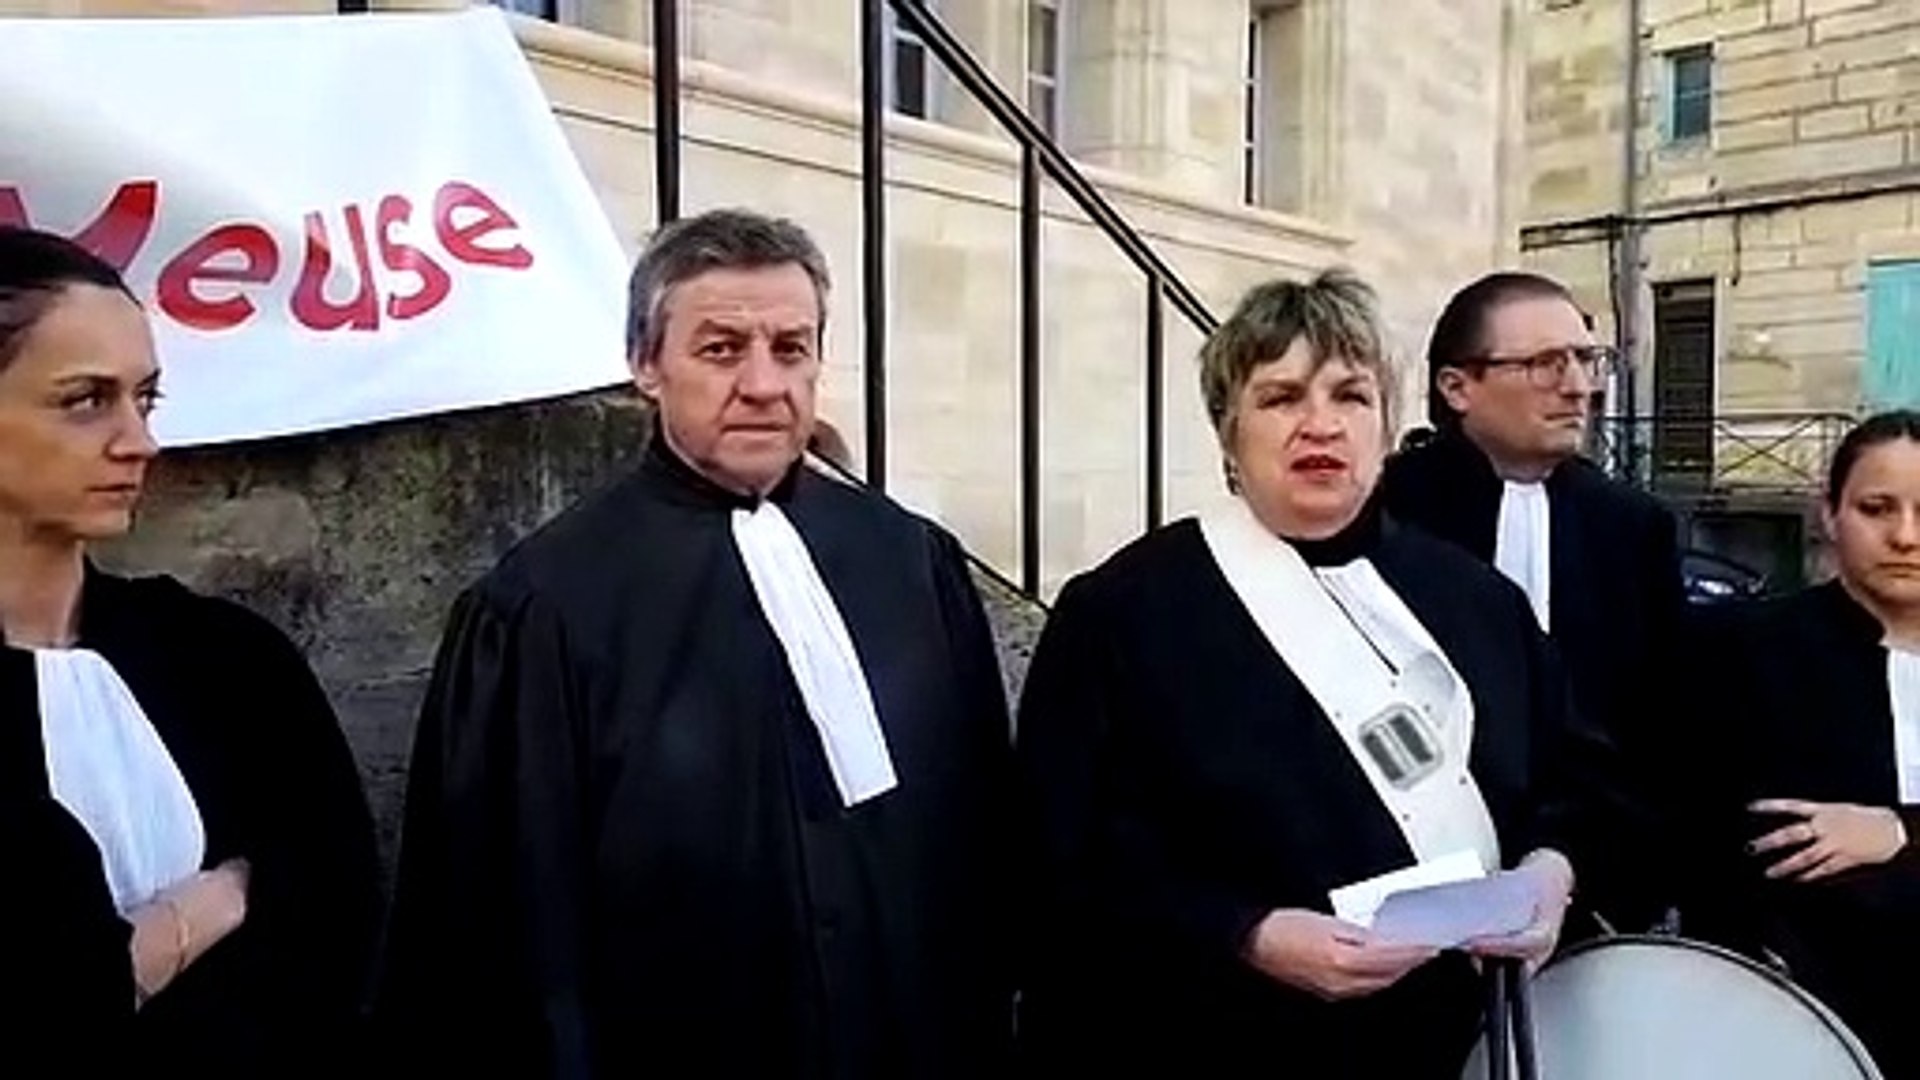 Les avocats du barreau de la Meuse manifestent devant le palais de justice  de Bar-le-Duc - Vidéo Dailymotion